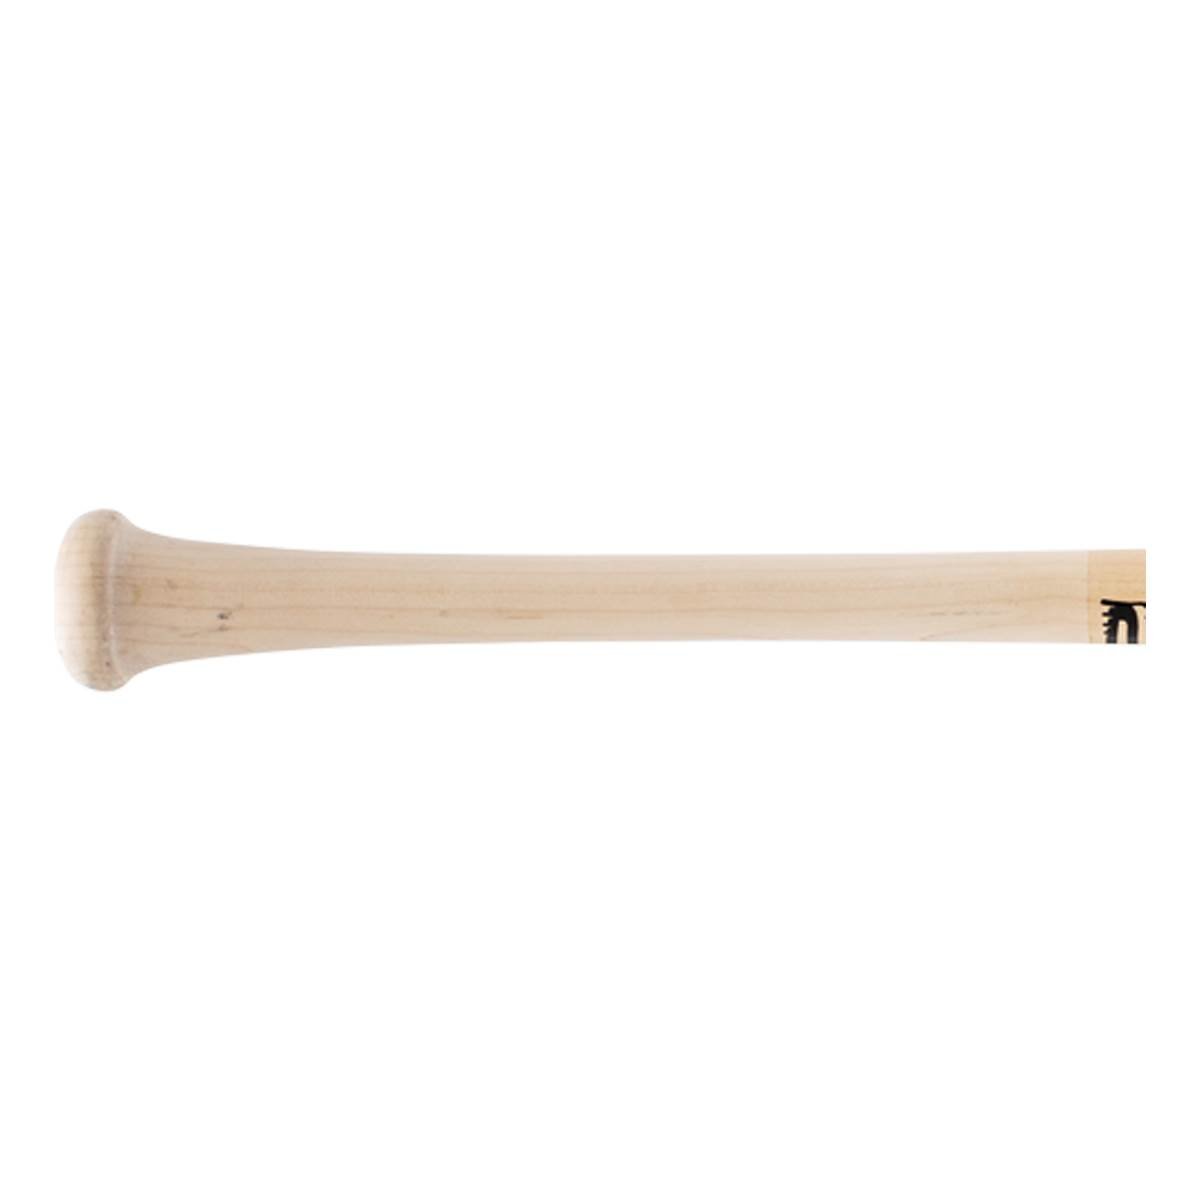 Buy Wholesale India Heavy Duty Wooden Baseball Bat Training